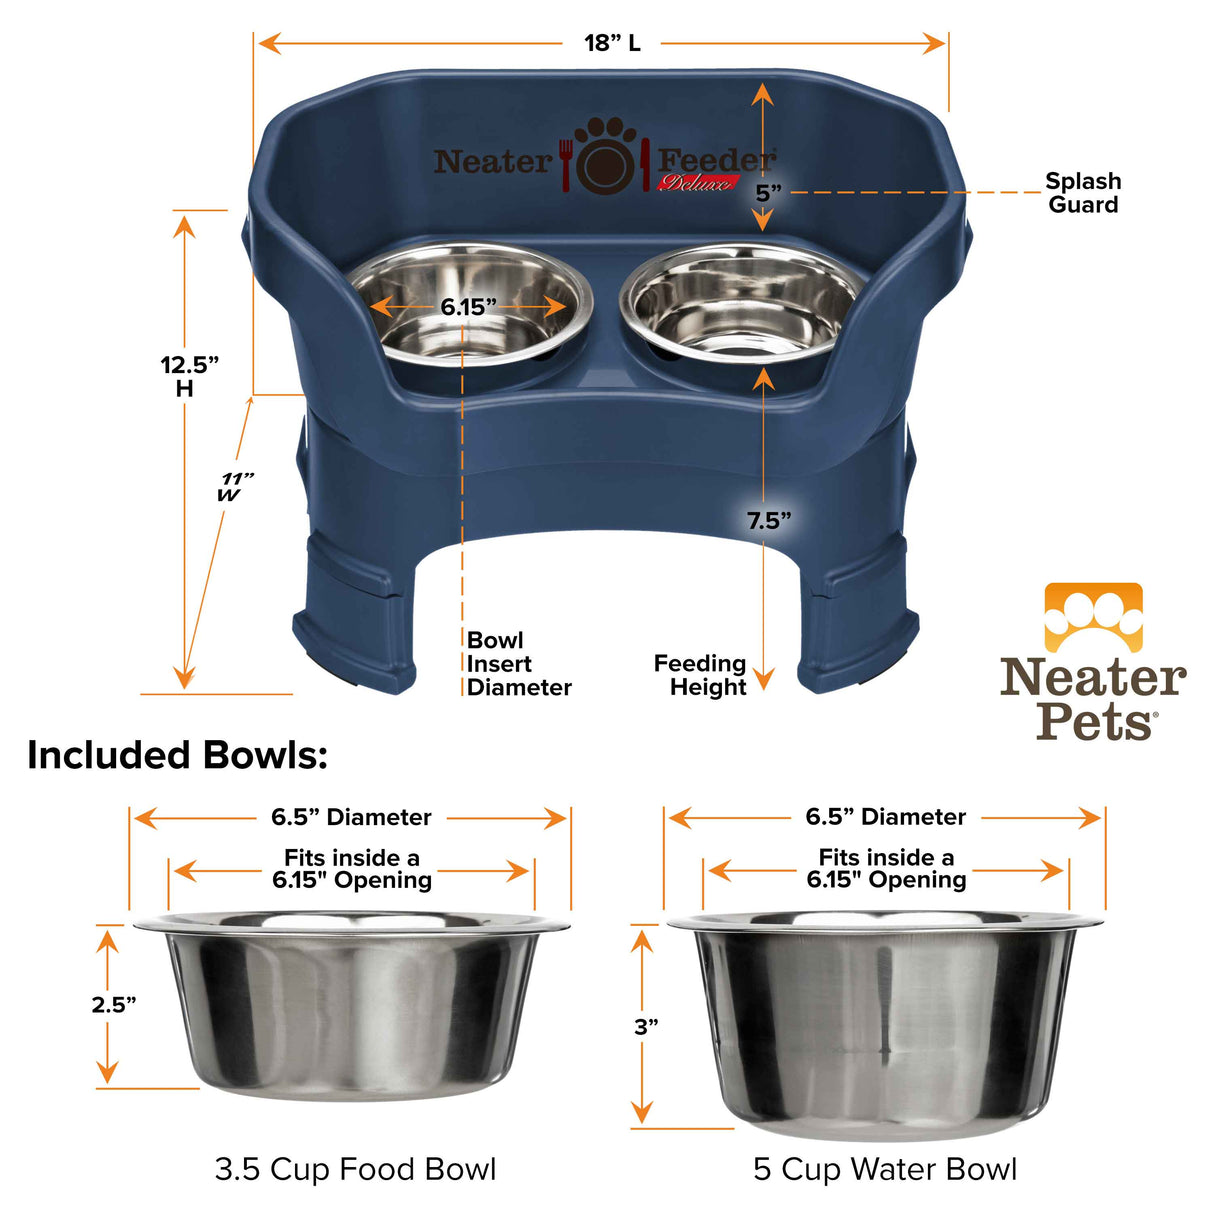 Medium dog feeder and bowl dimensions